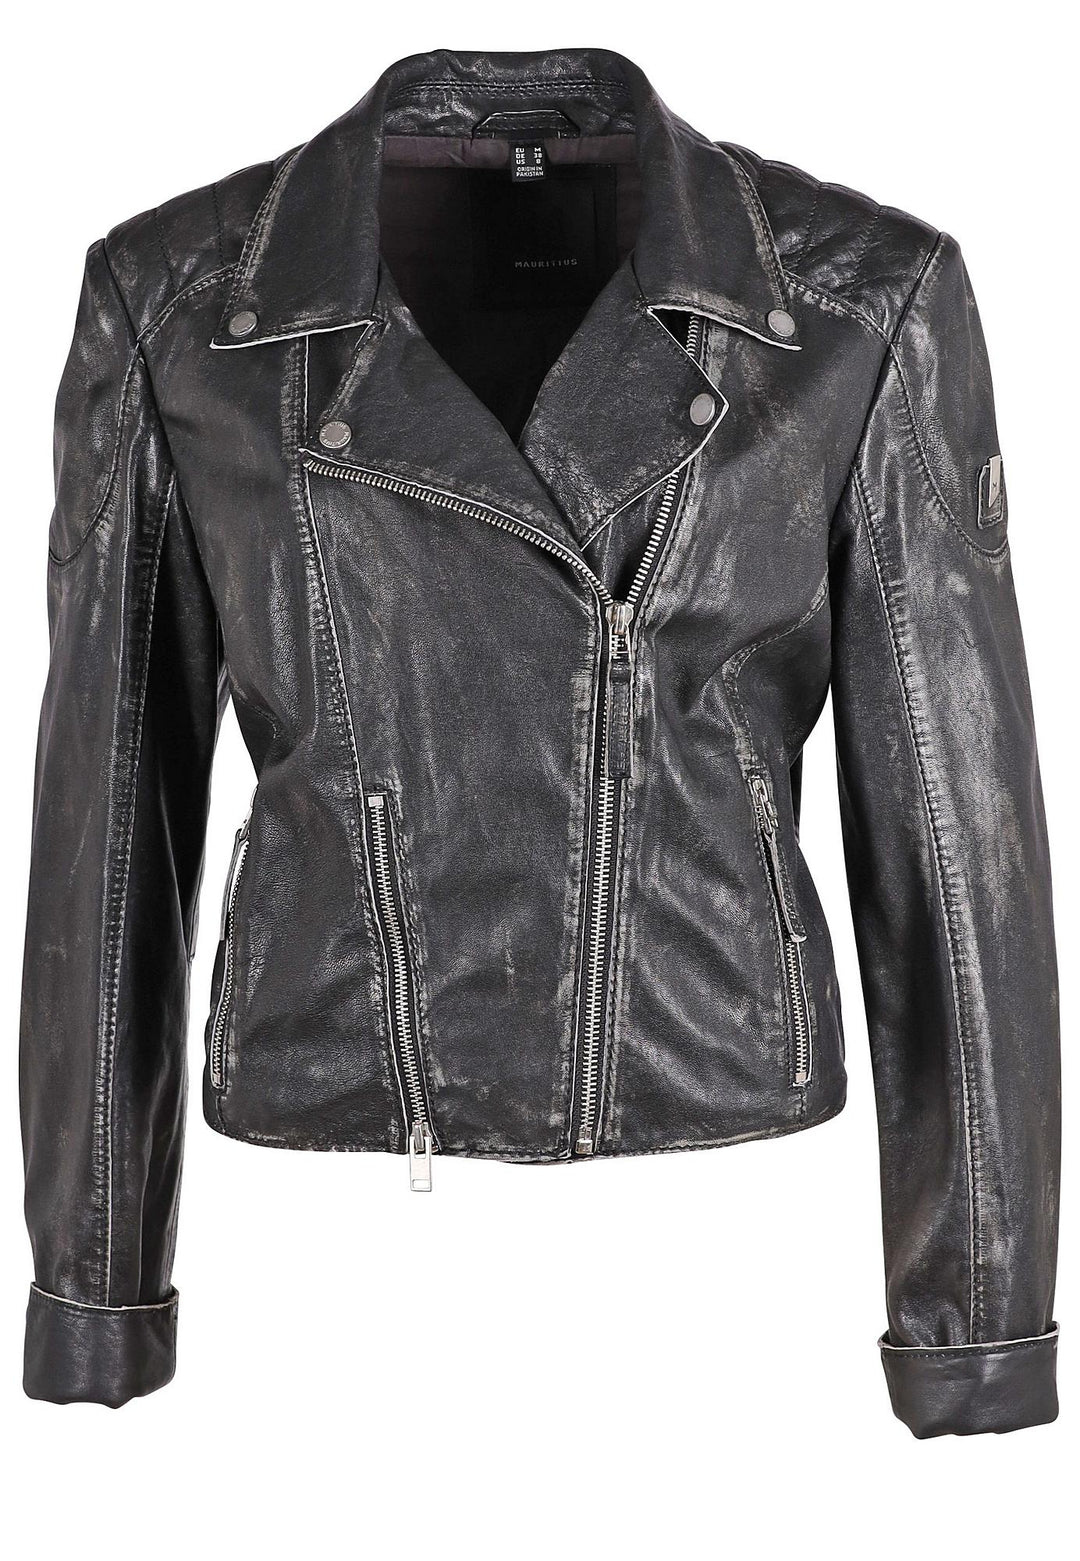 Reanon RF Leather Jacket - Vintage Black